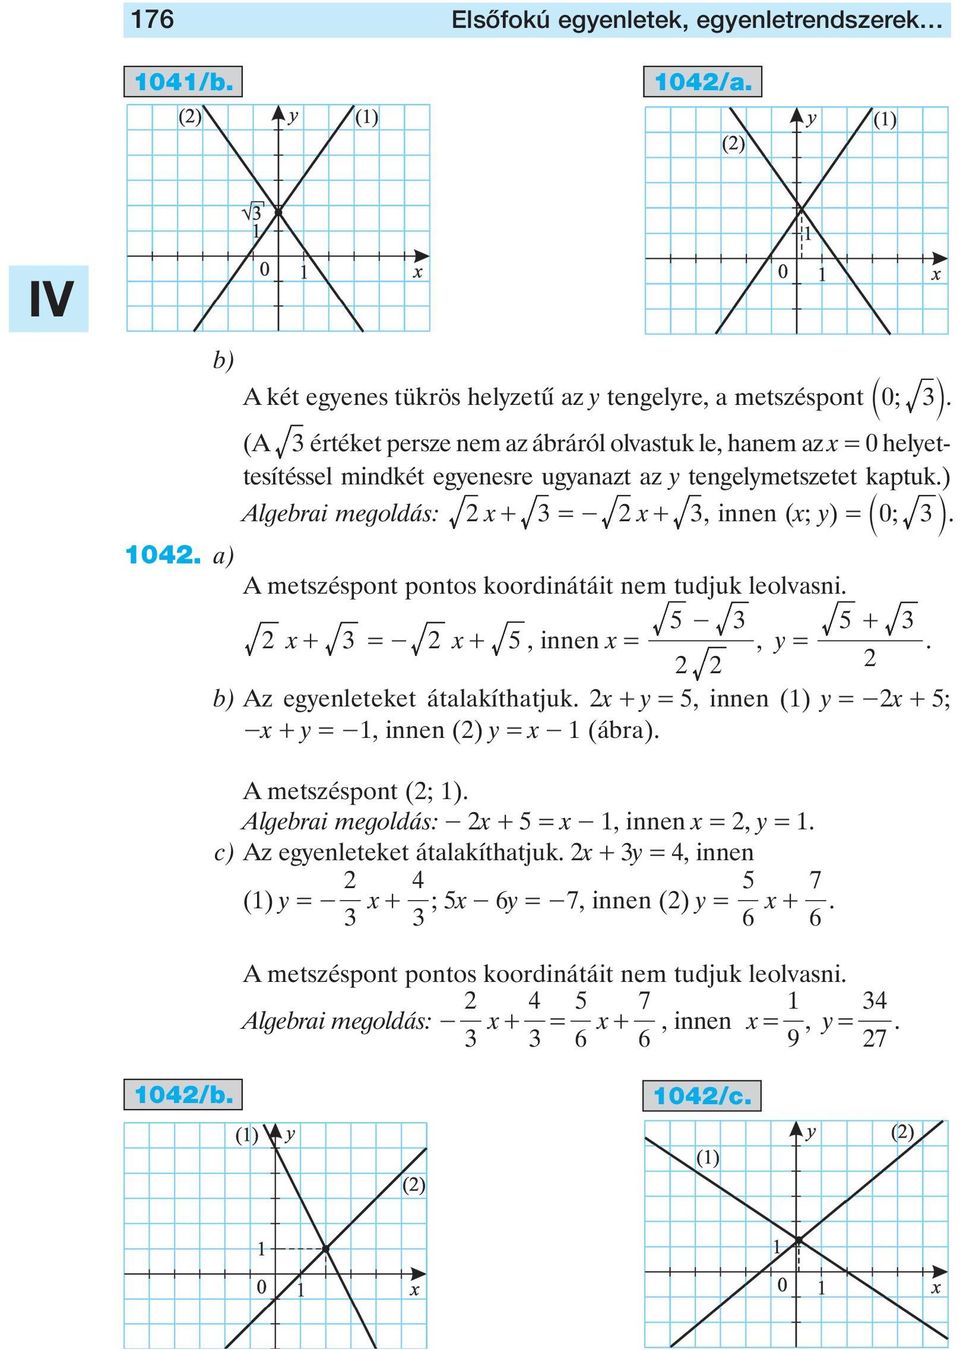 a) A metszéspont pontos koordinátáit nem tudjuk leolvasni. x + = - x +, innen x = -, y = + b) Az egyenleteket átalakíthatjuk. x + y =, innen () y =-x + ; -x + y =-, innen () y = x - (ábra).